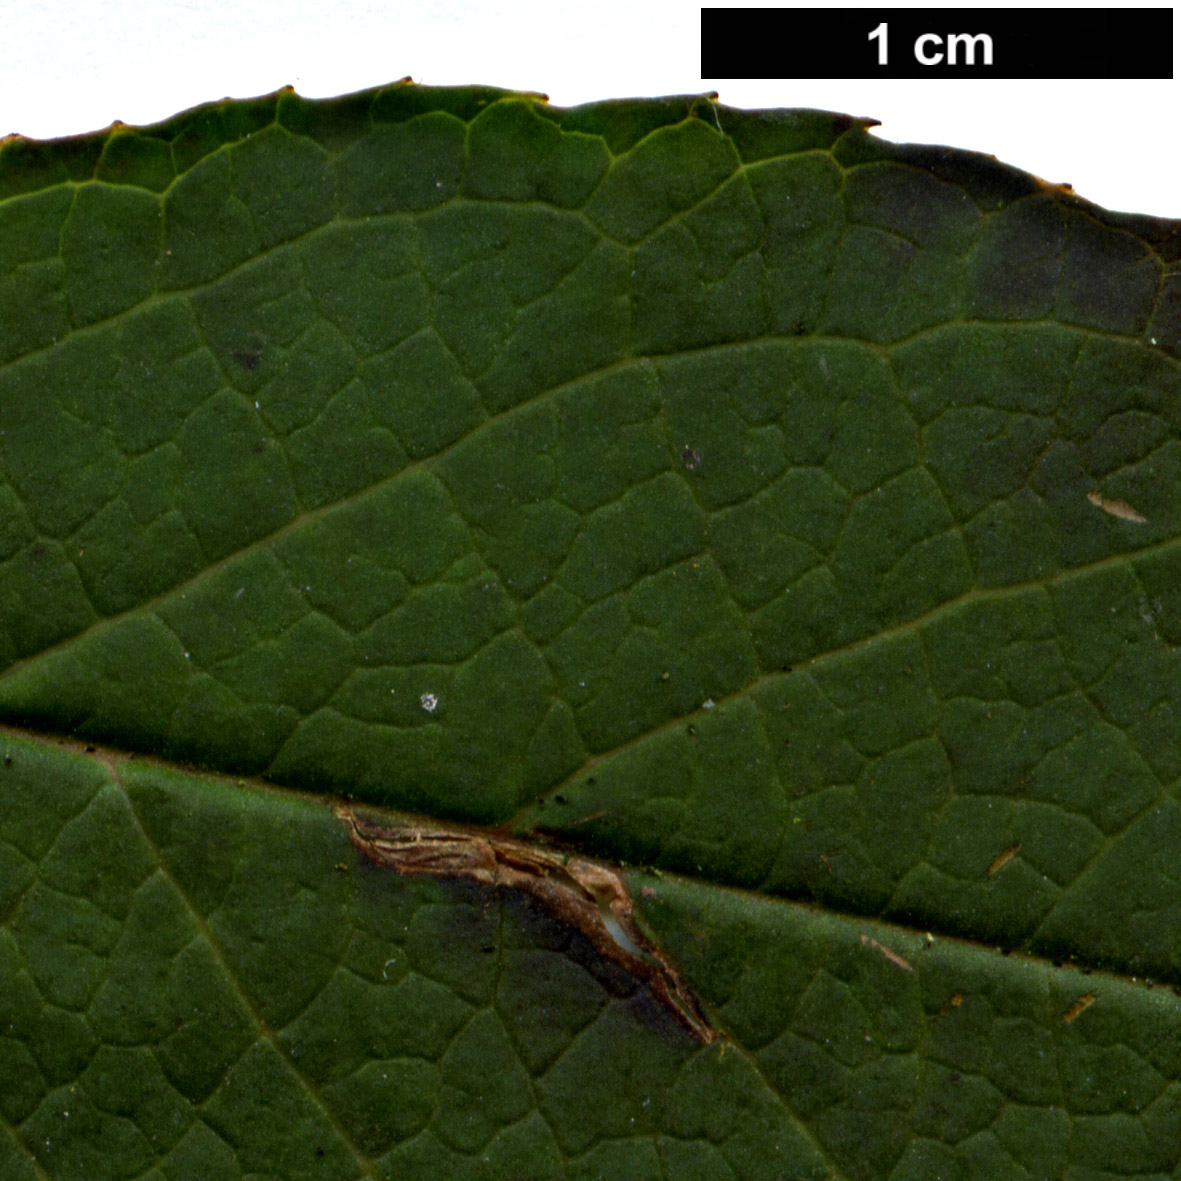 High resolution image: Family: Theaceae - Genus: Stewartia - Taxon: serrata